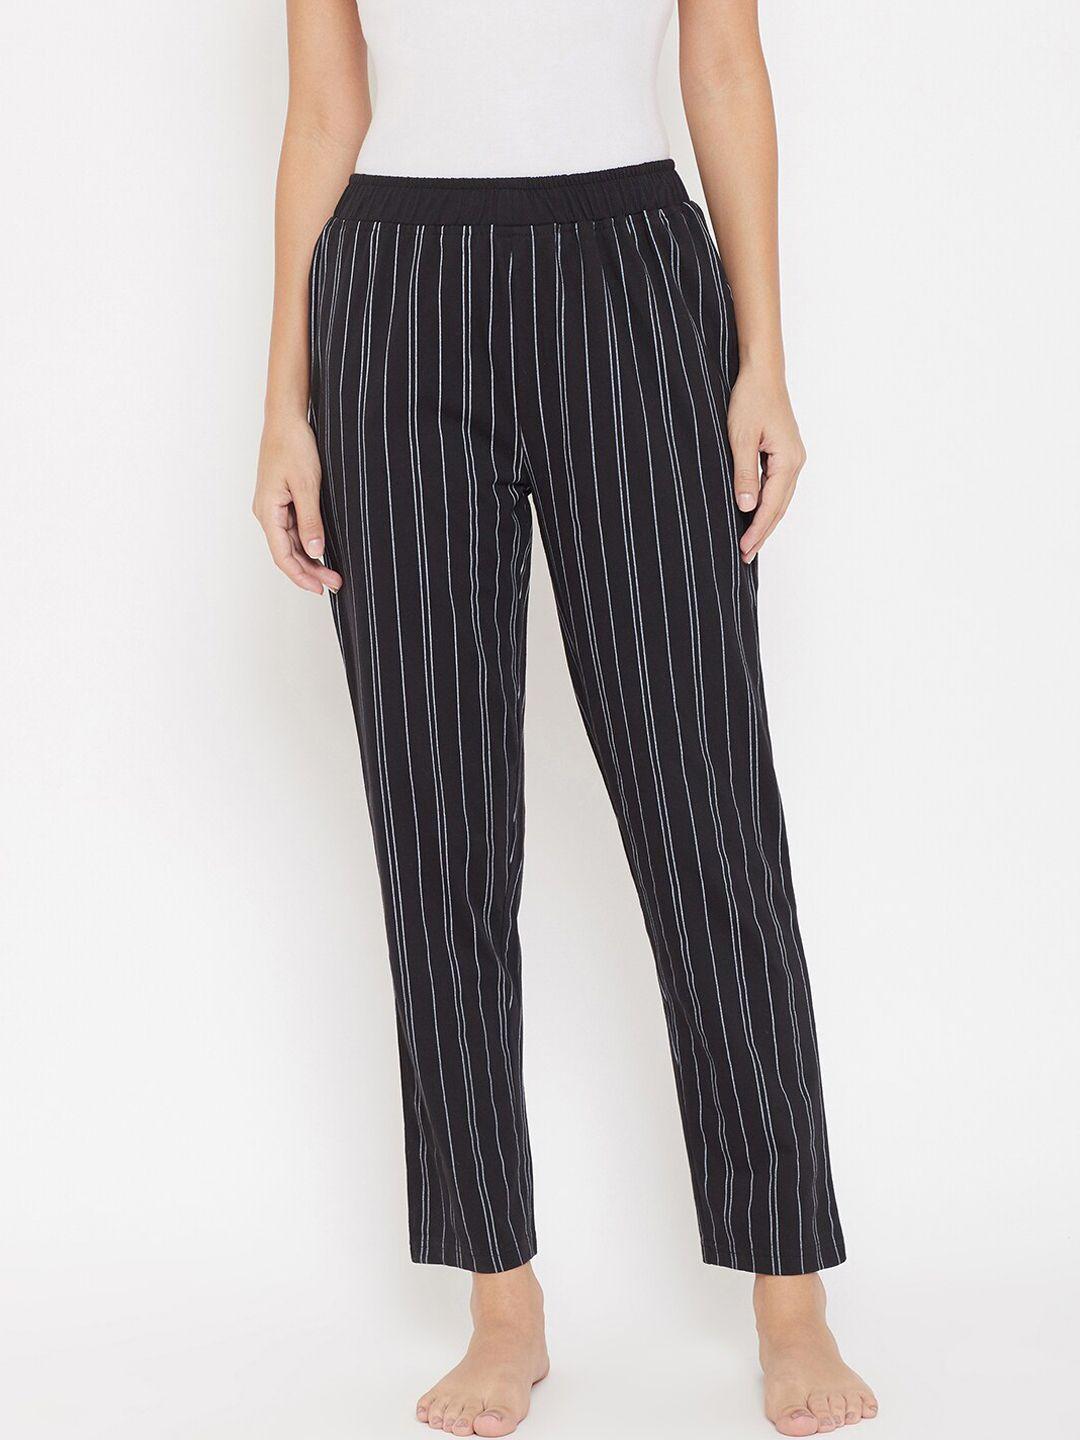 Okane Women Black & White Striped Cotton Lounge Pants